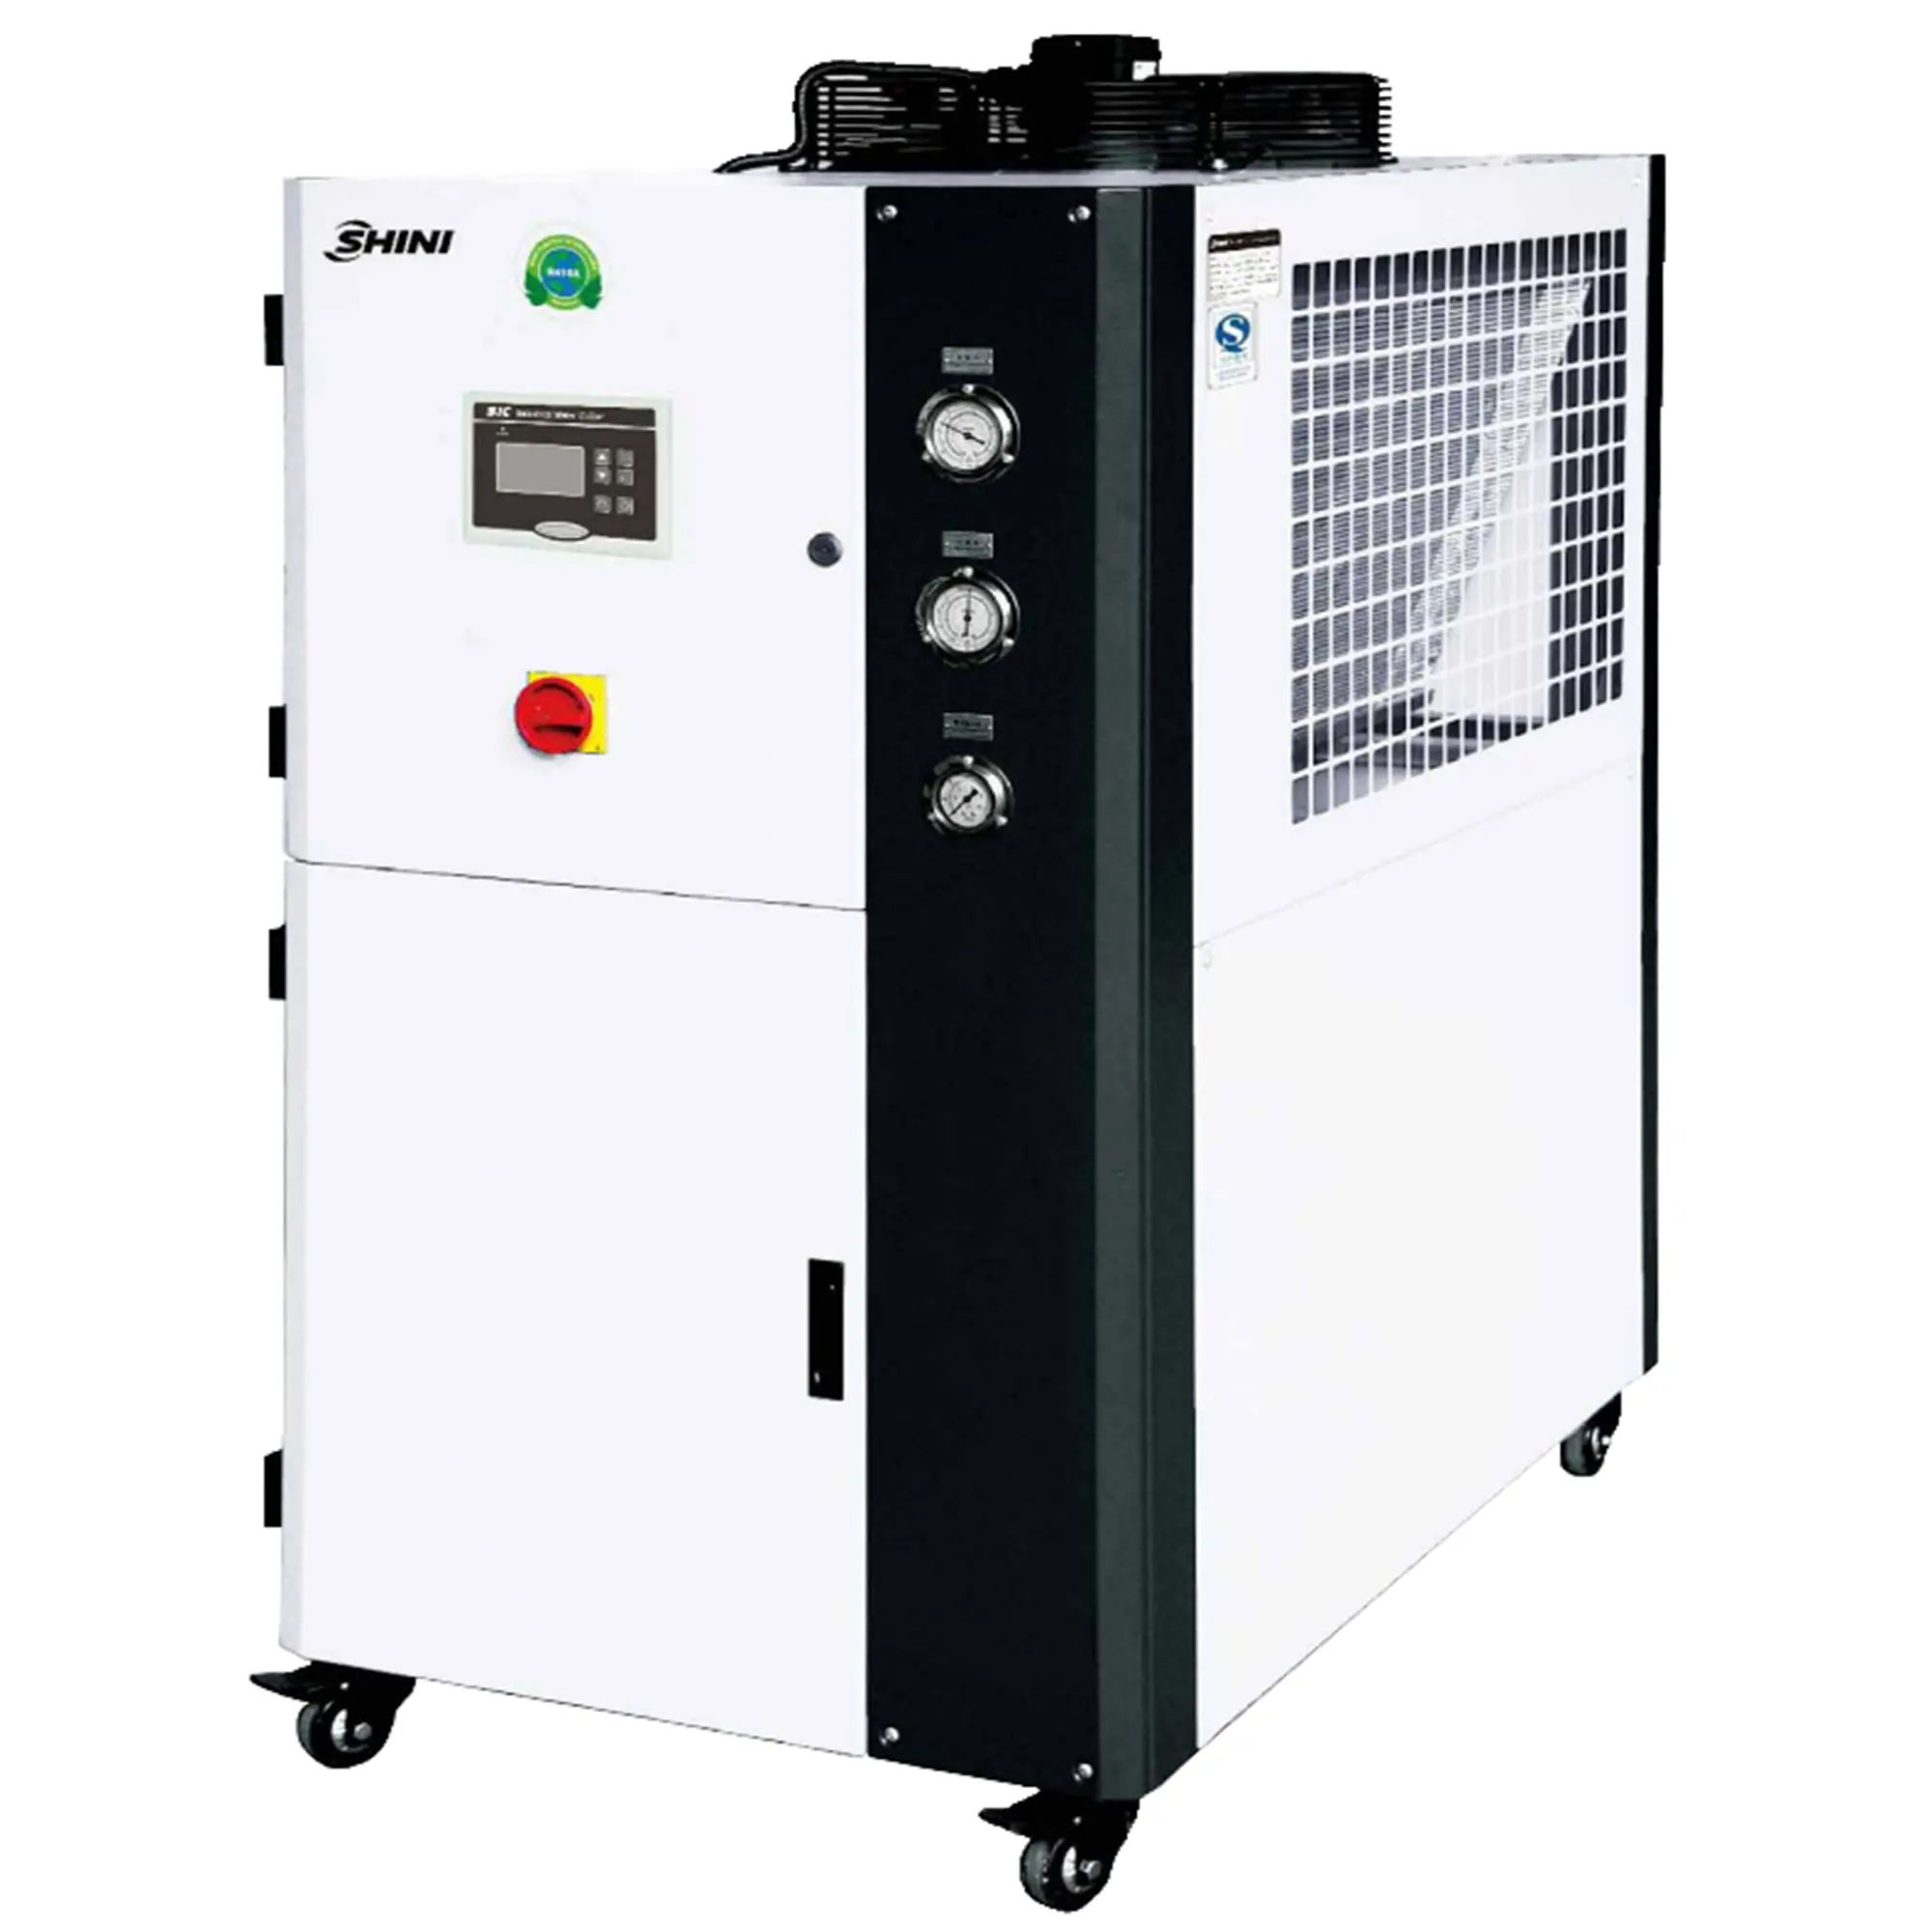 SHINI Industrie-Kühler hohe Qualität ausgezeichnete 20 PS industrielle Wassertank Kühlung Kühlgerät Preis zu verkaufen